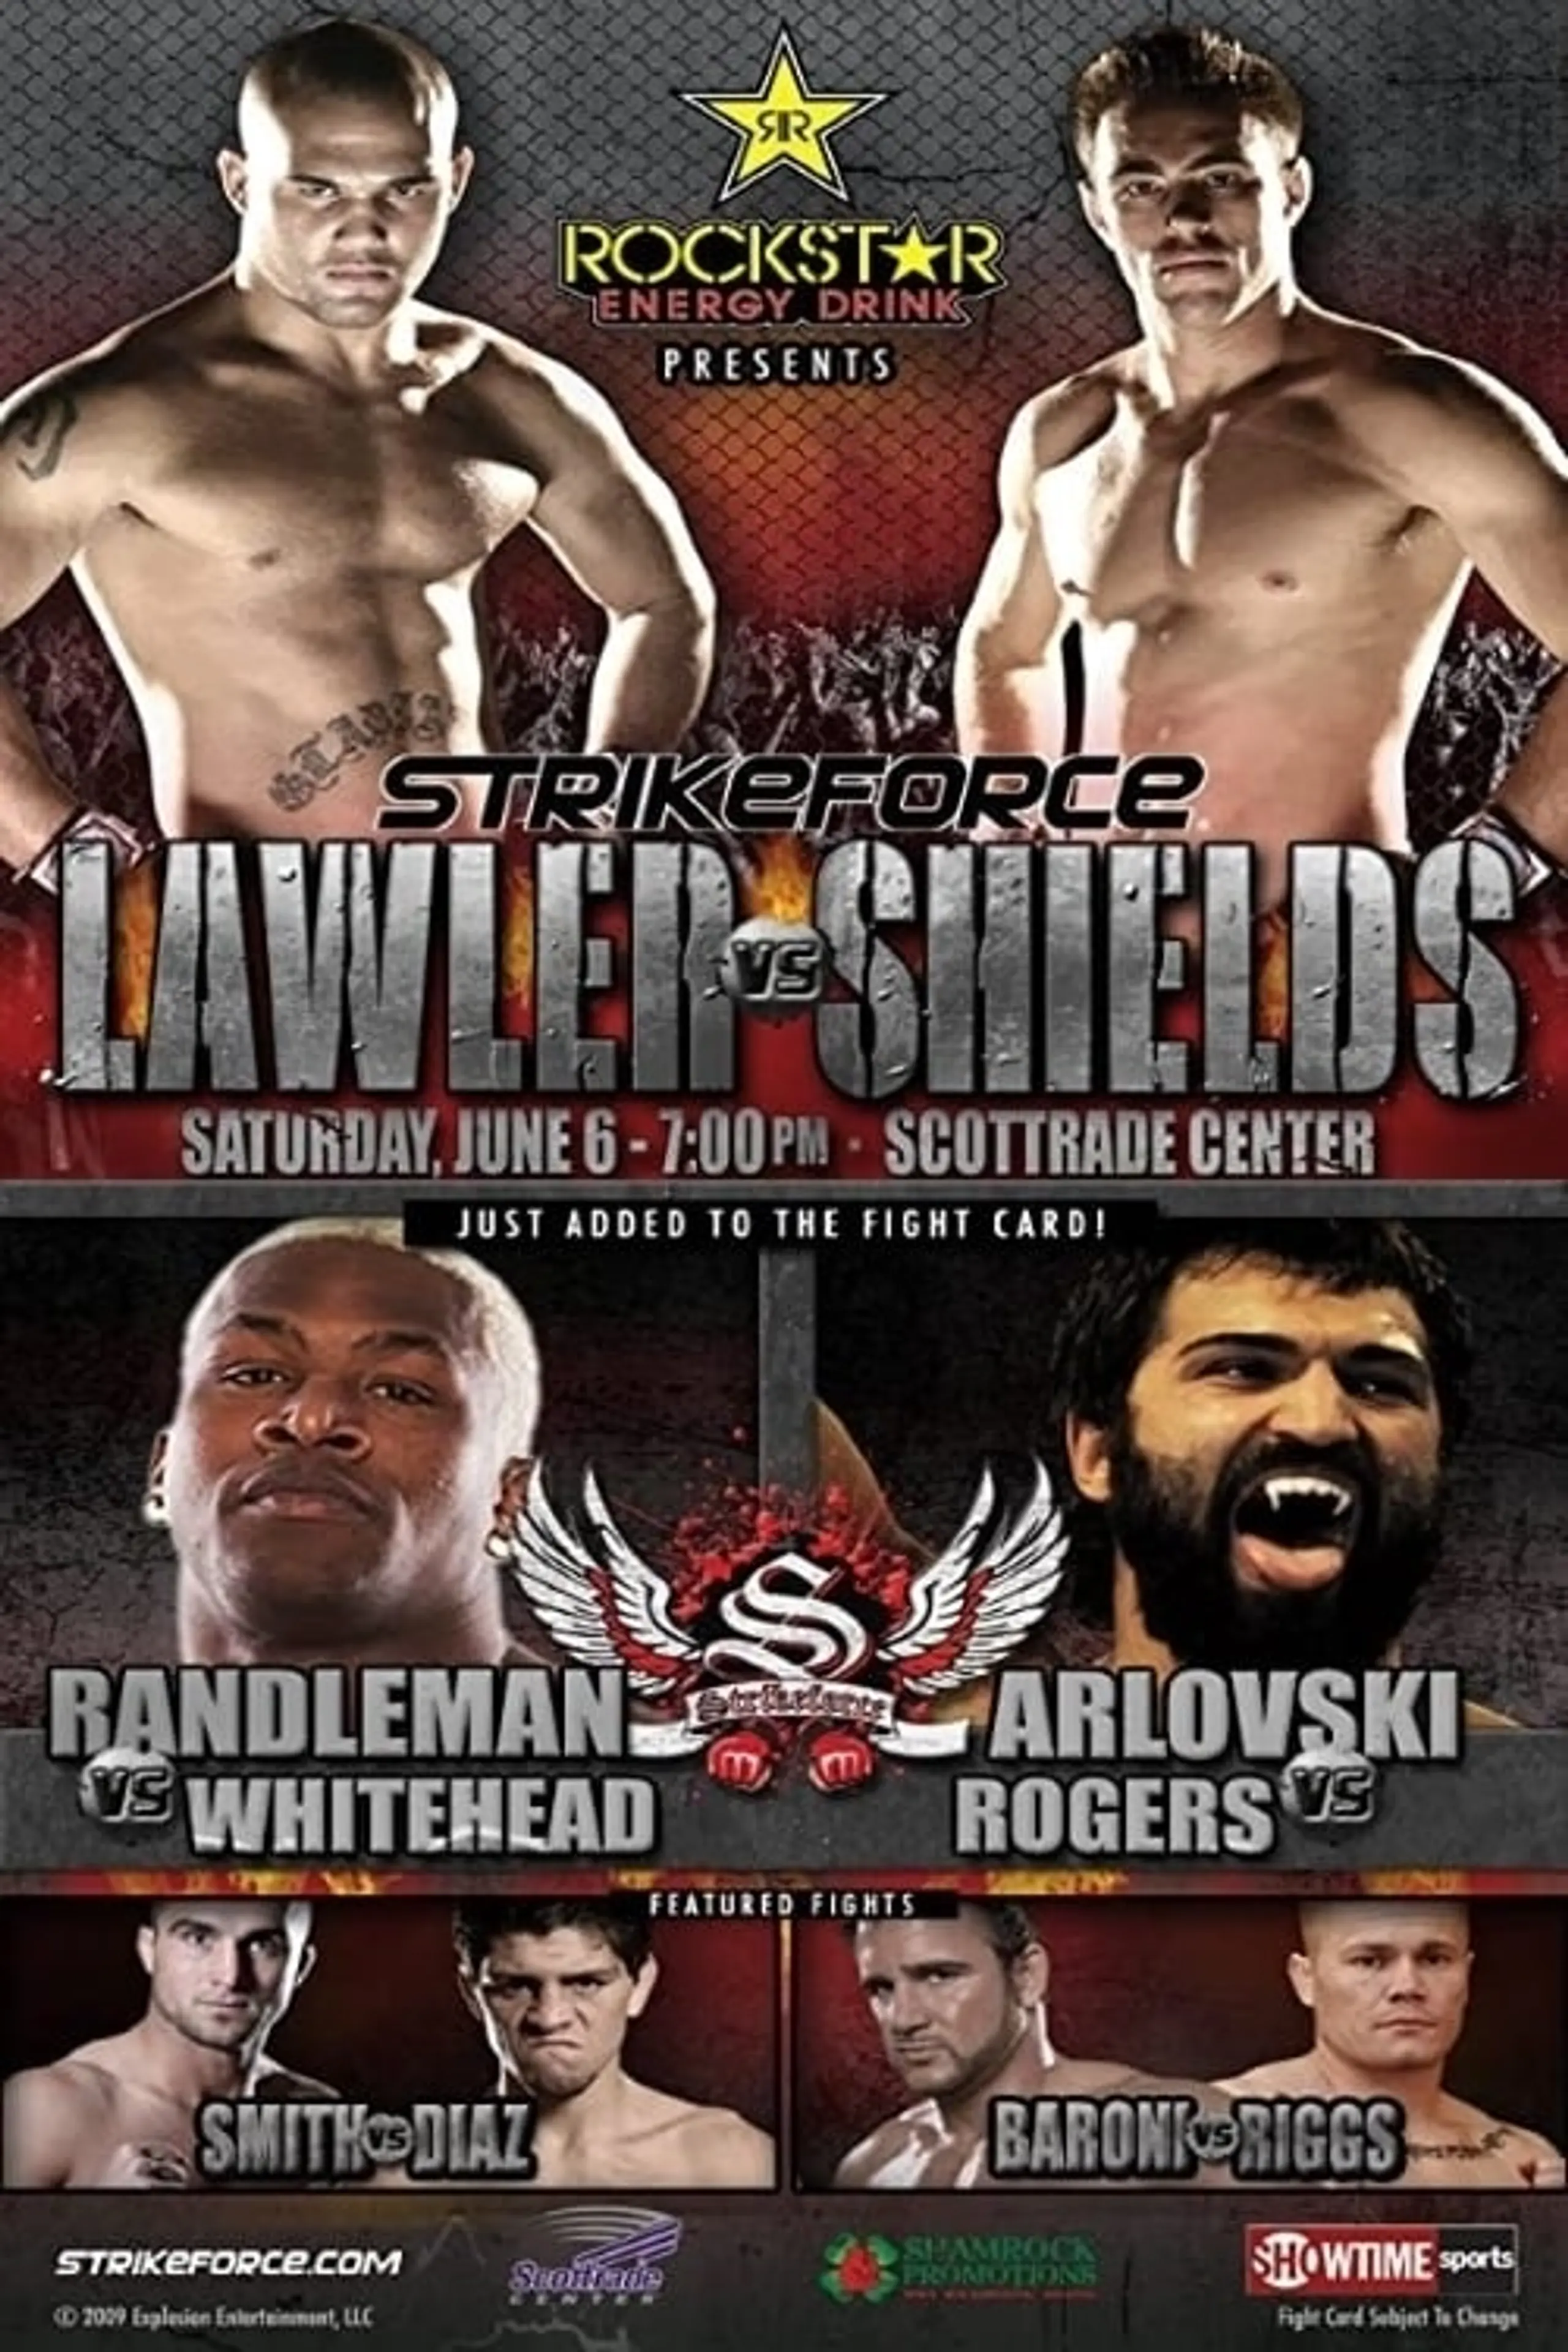 Strikeforce: Lawler vs. Shields